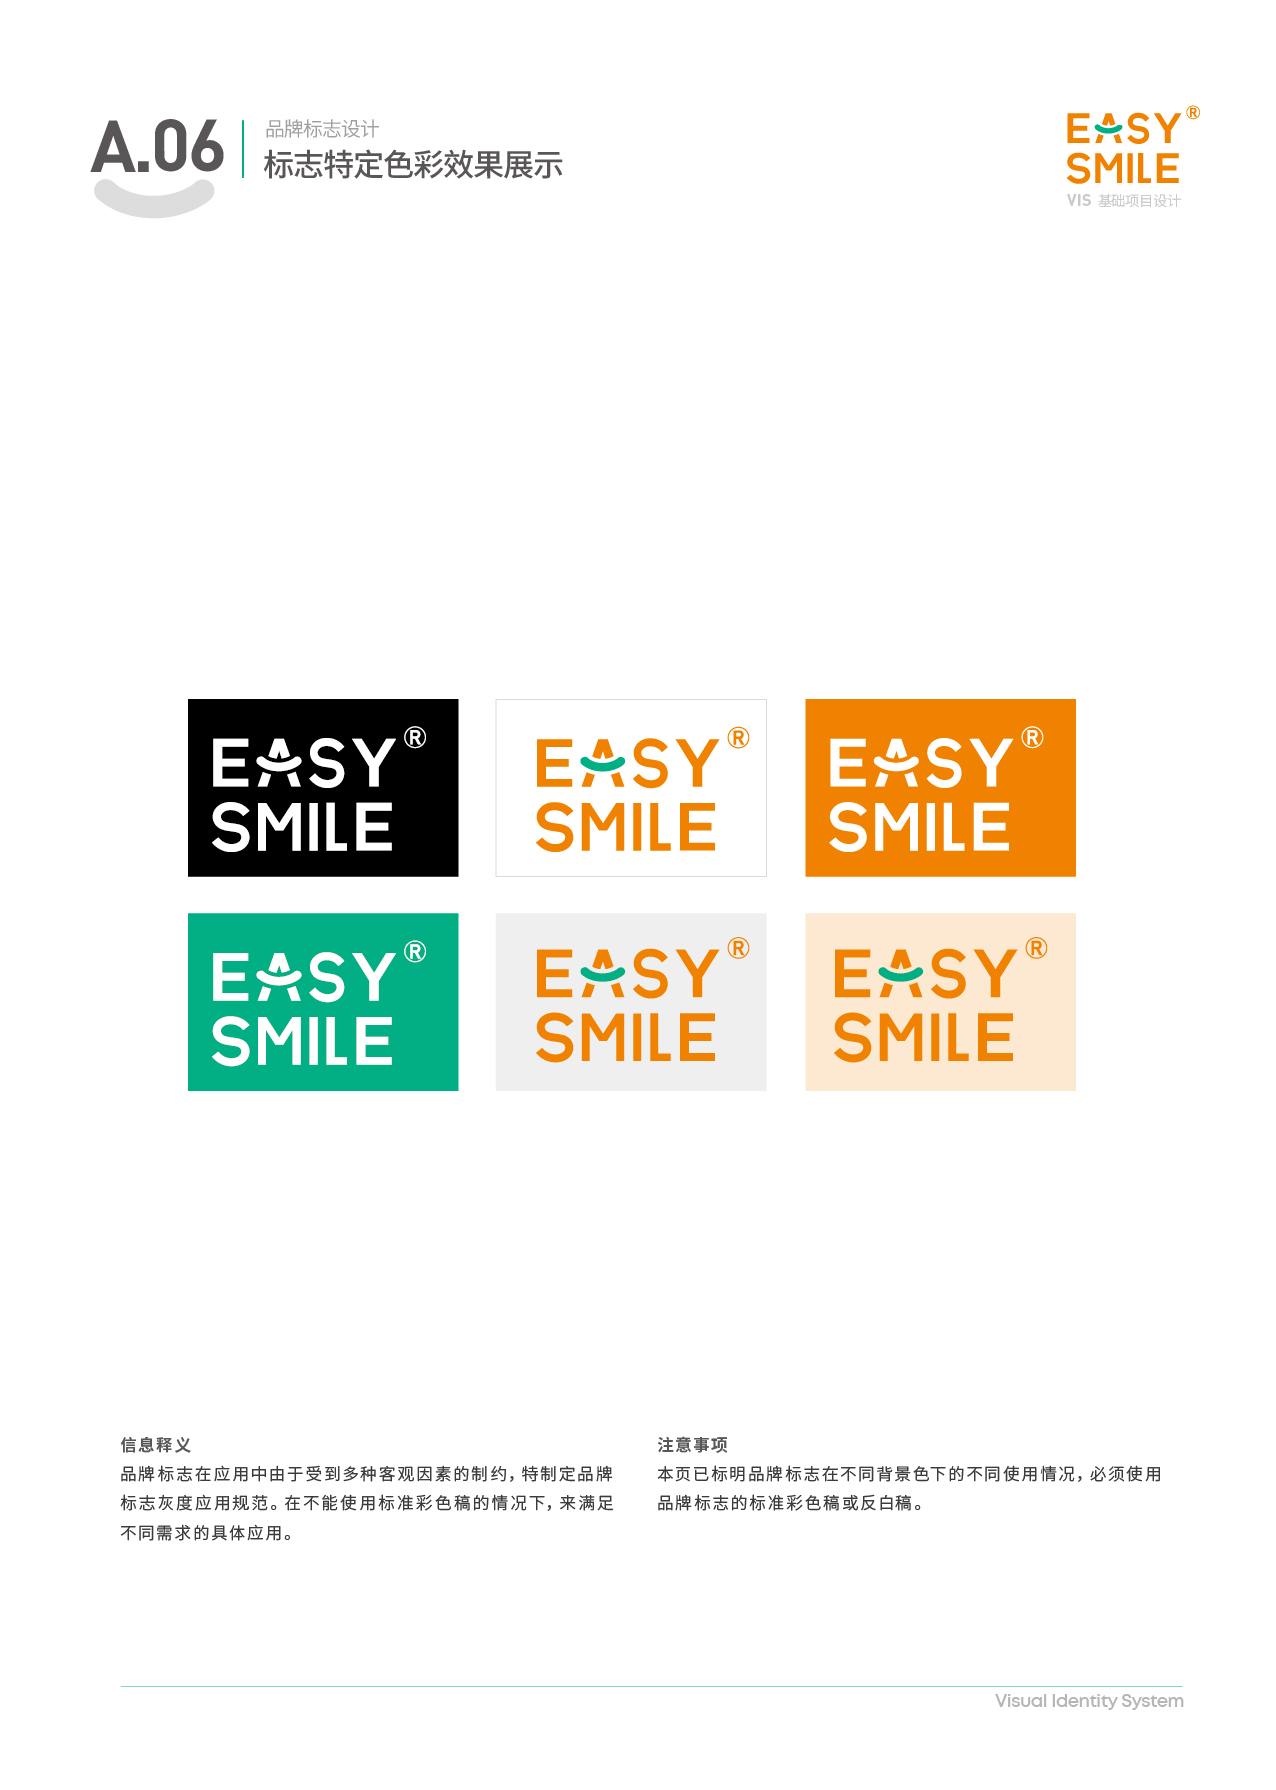 Easysmile 轻松笑品牌VIS图9